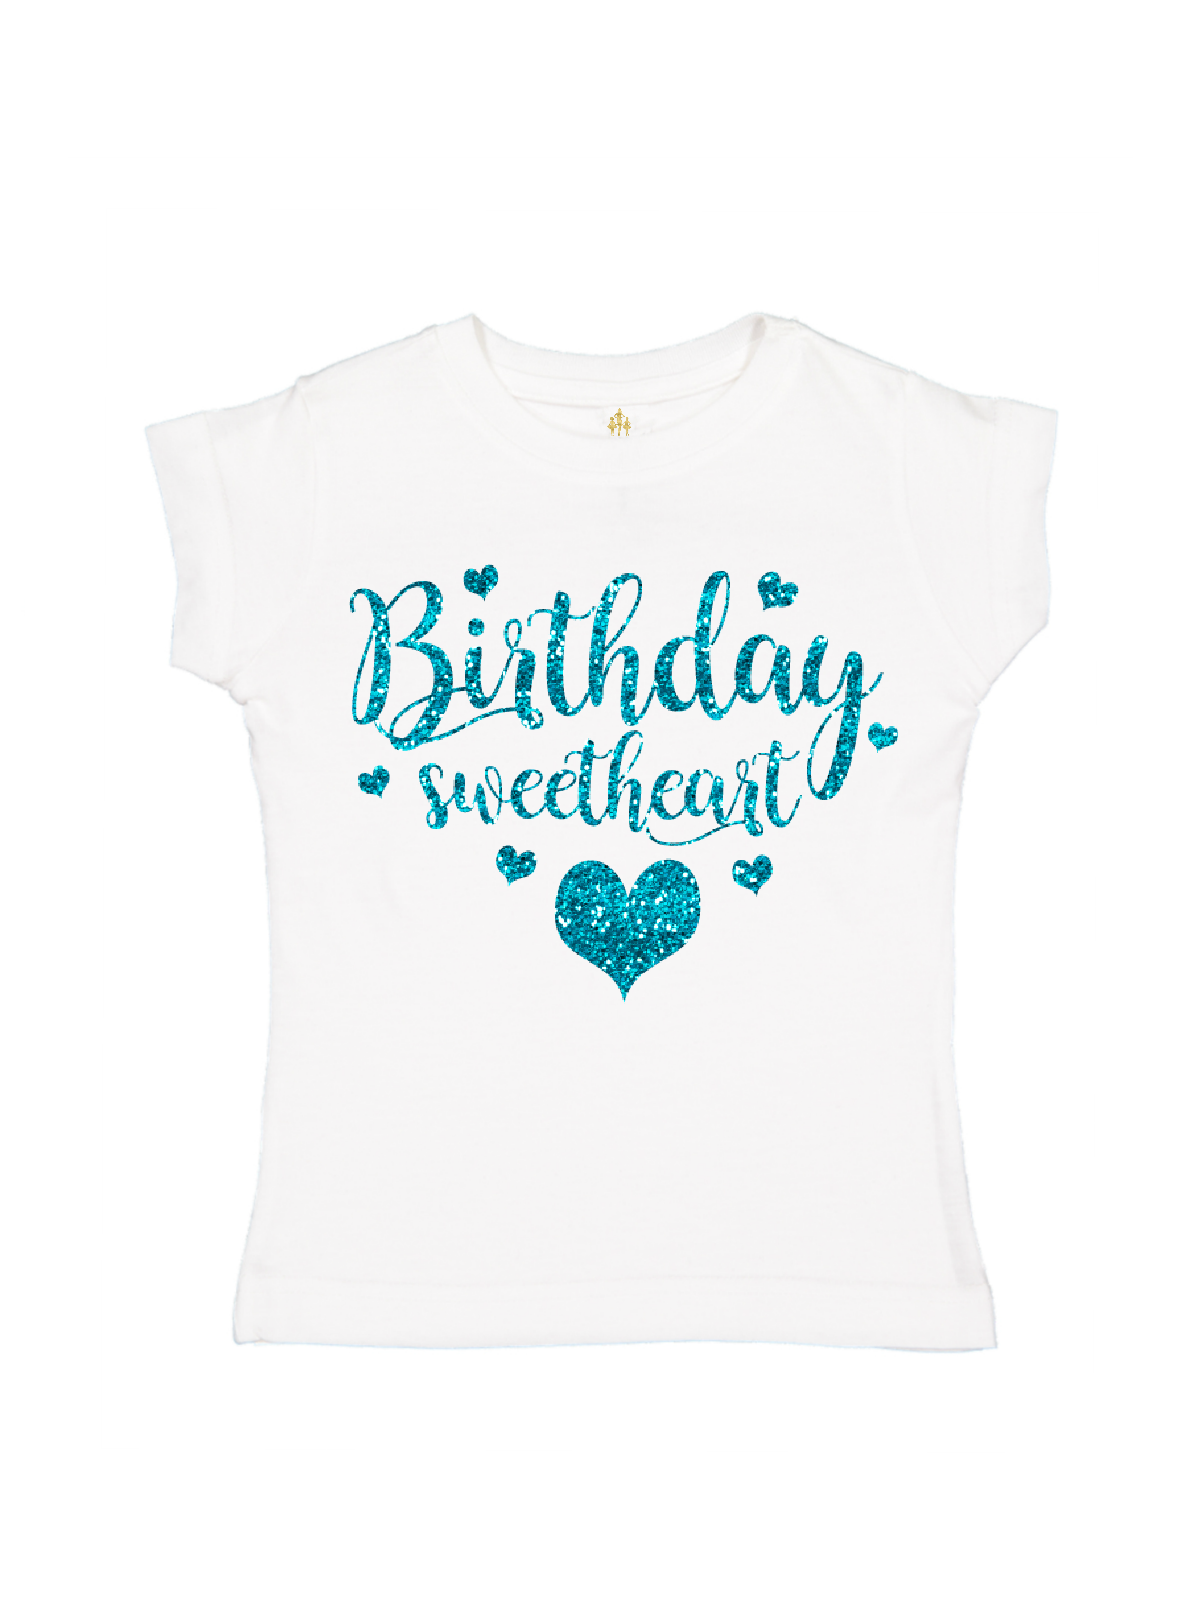 birthday sweetheart girls glitter shirt